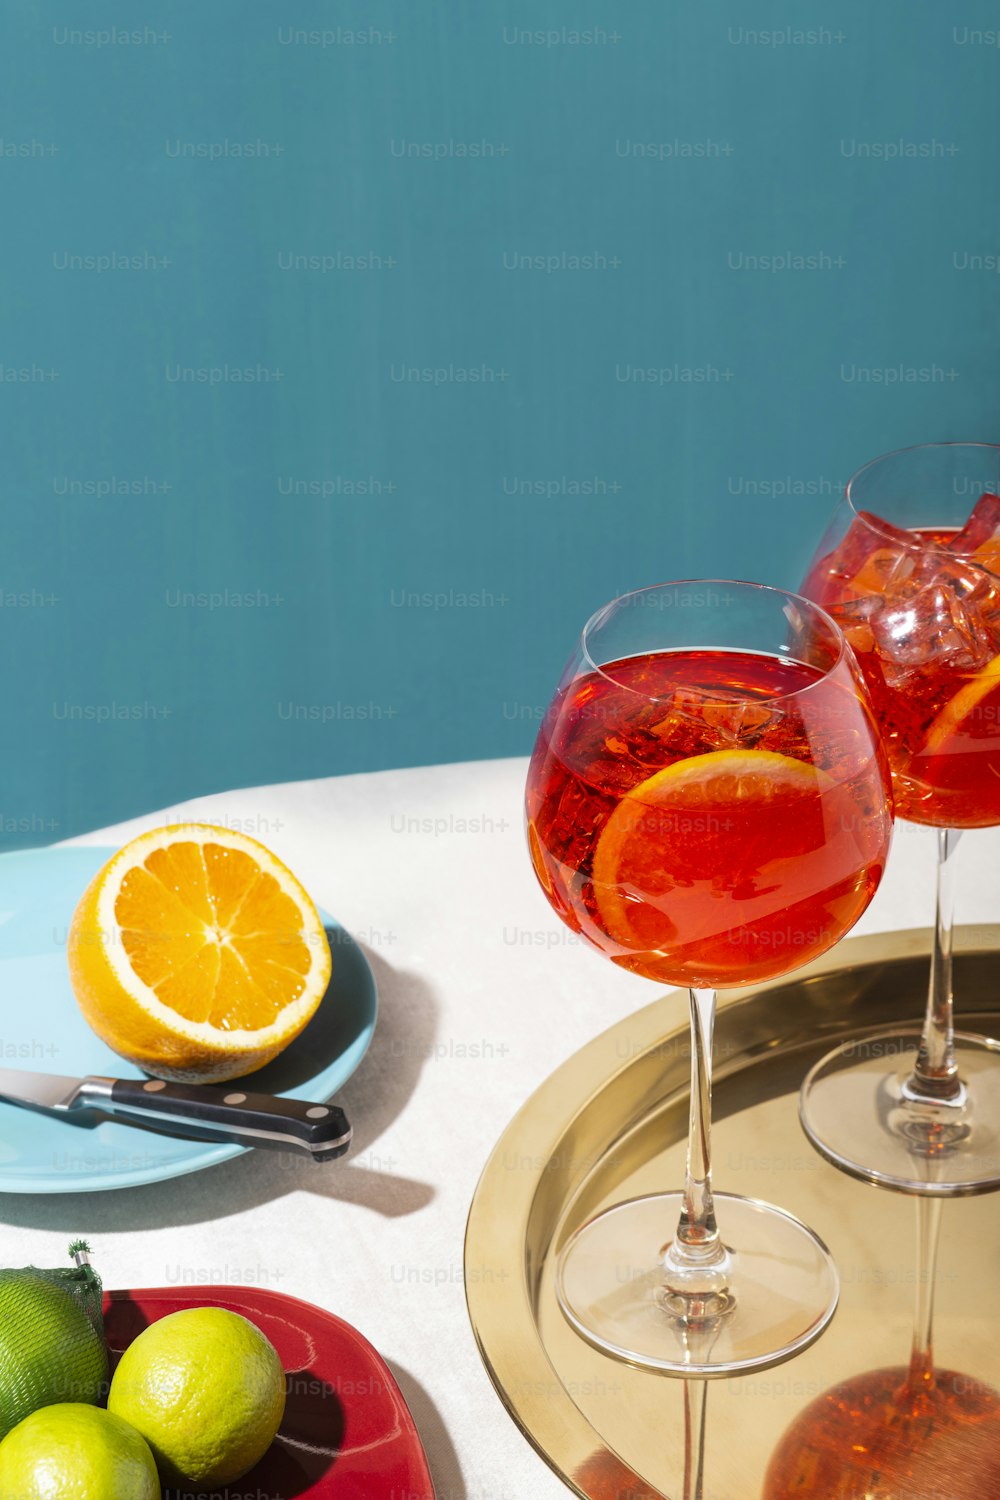 Spritz veneziano, ein IBA-Cocktail, mit Prosecco oder weißem Sekt, Bitter, Soda, Eis und einer Scheibe Orange, in einem Calix auf einem Tisch, Pop-Grafik-Stil